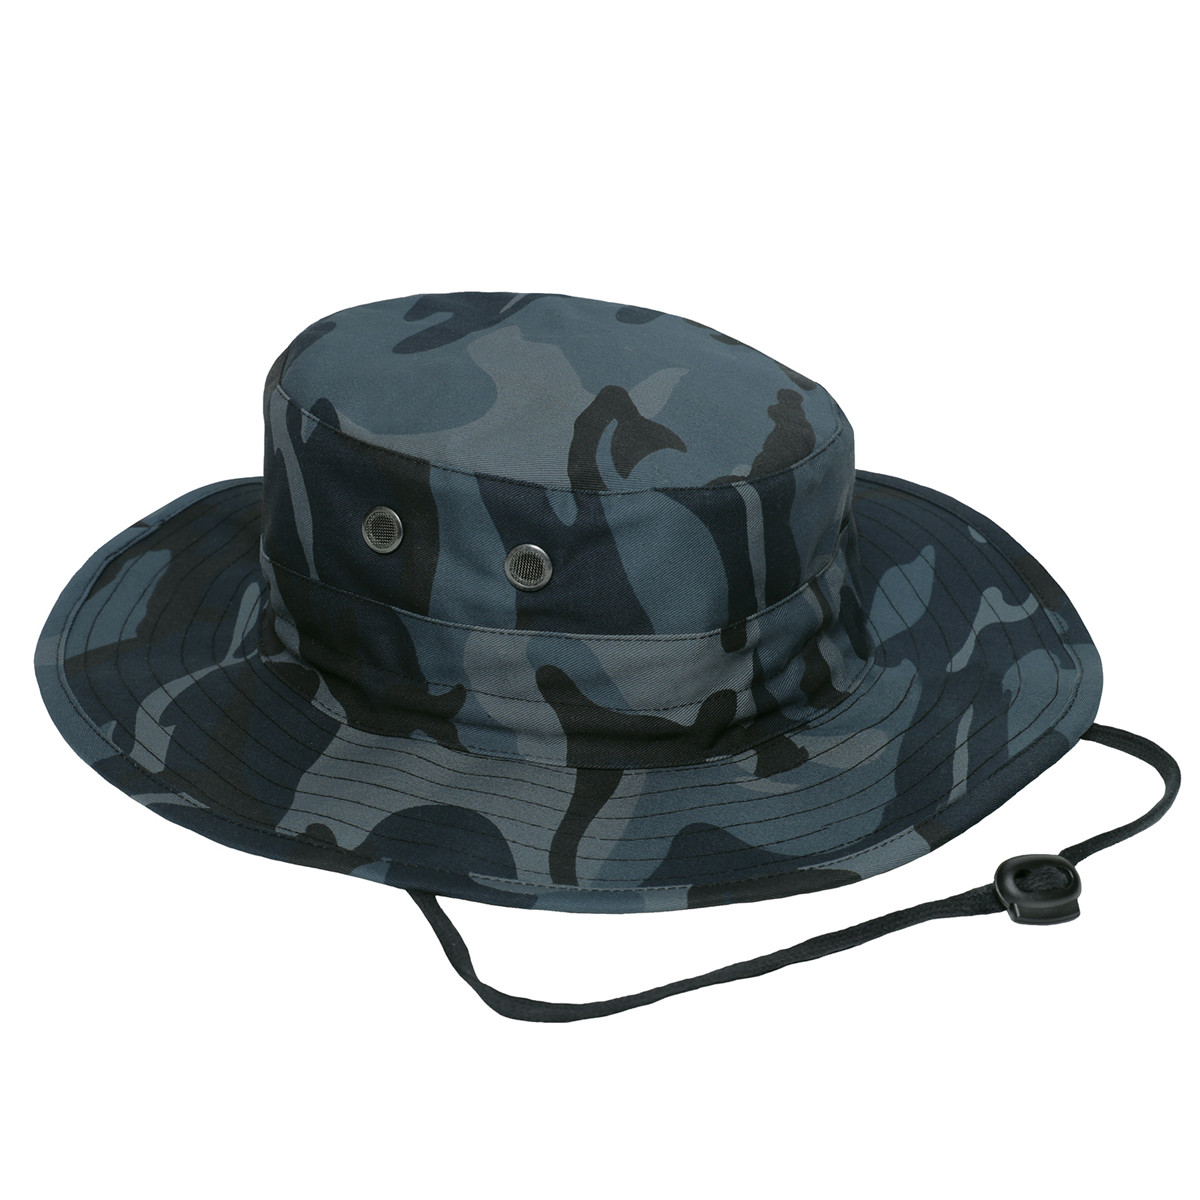 Shop Adjustable Midnight Camo Boonie Hats - Fatigues Army Navy